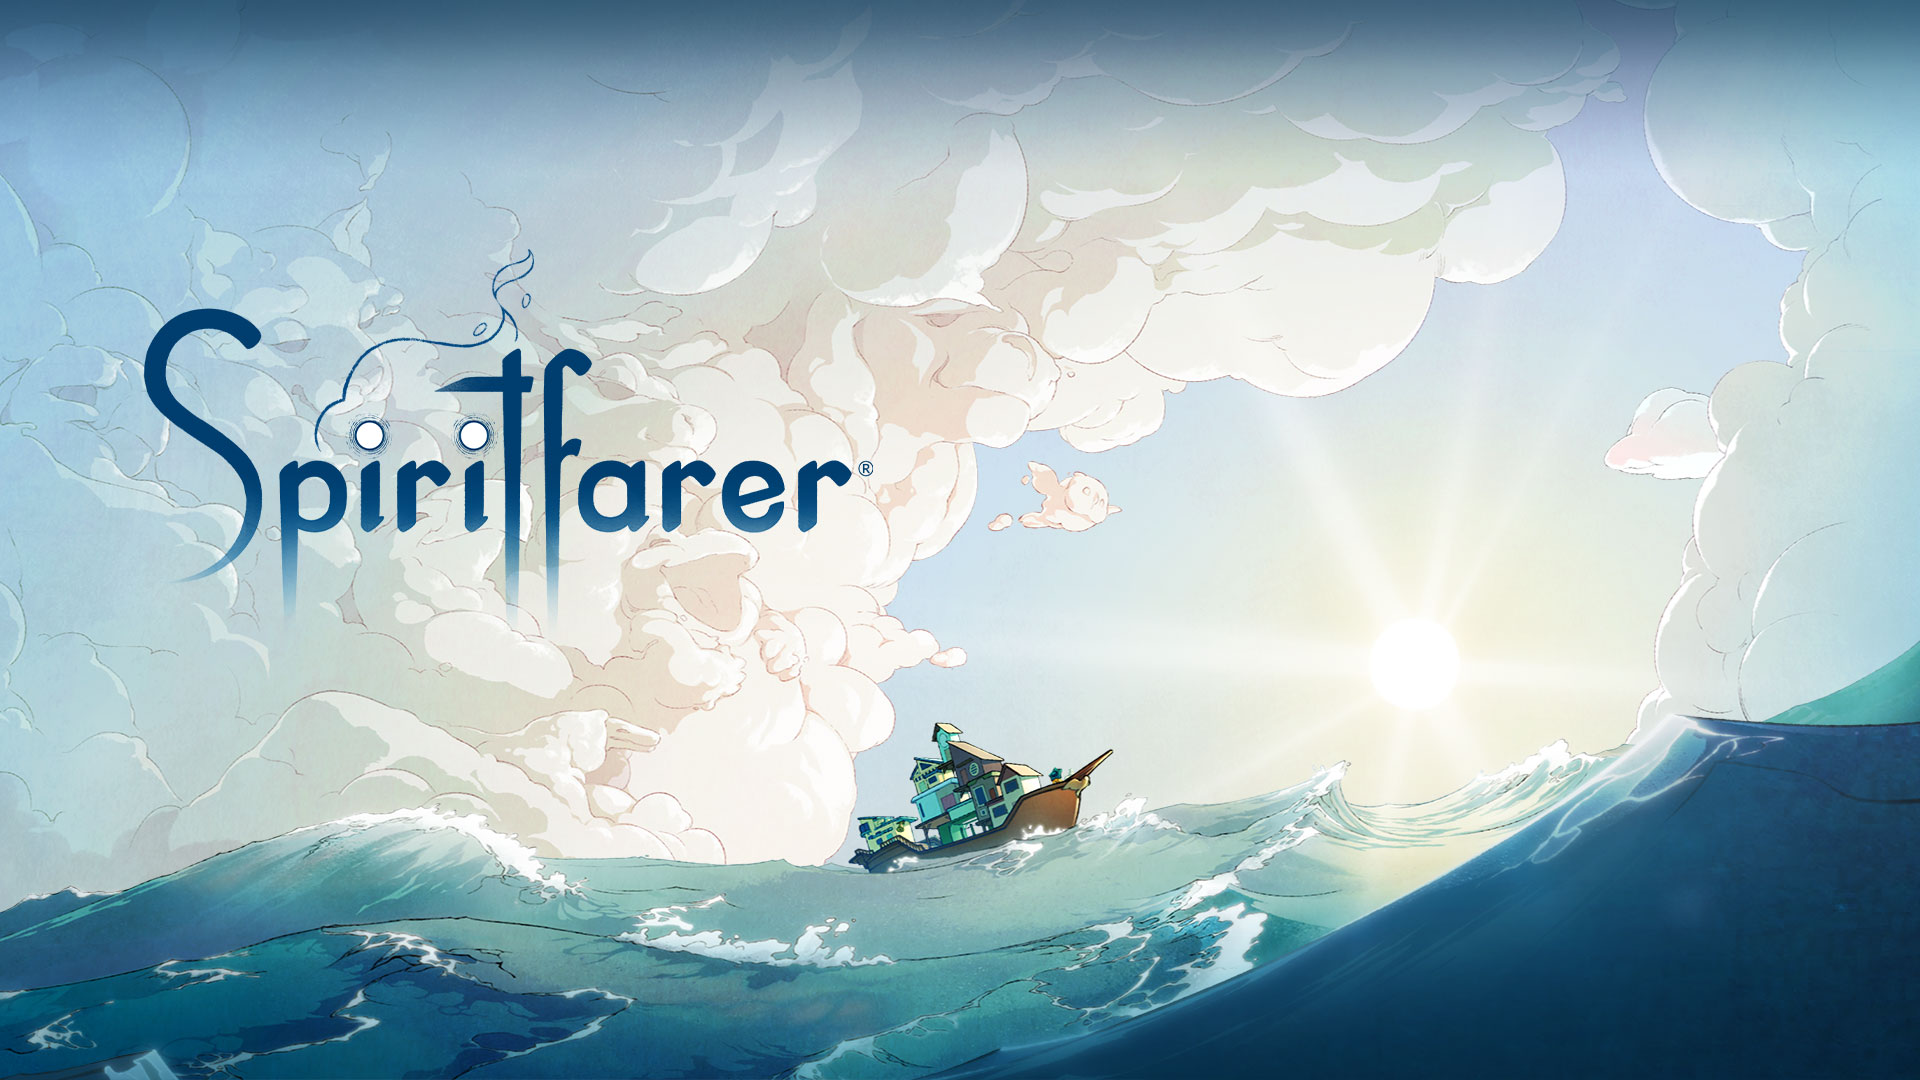 Logo Spiritfarer, łódź na wodzie z chmurami tworzącymi kształty różnych zwierząt